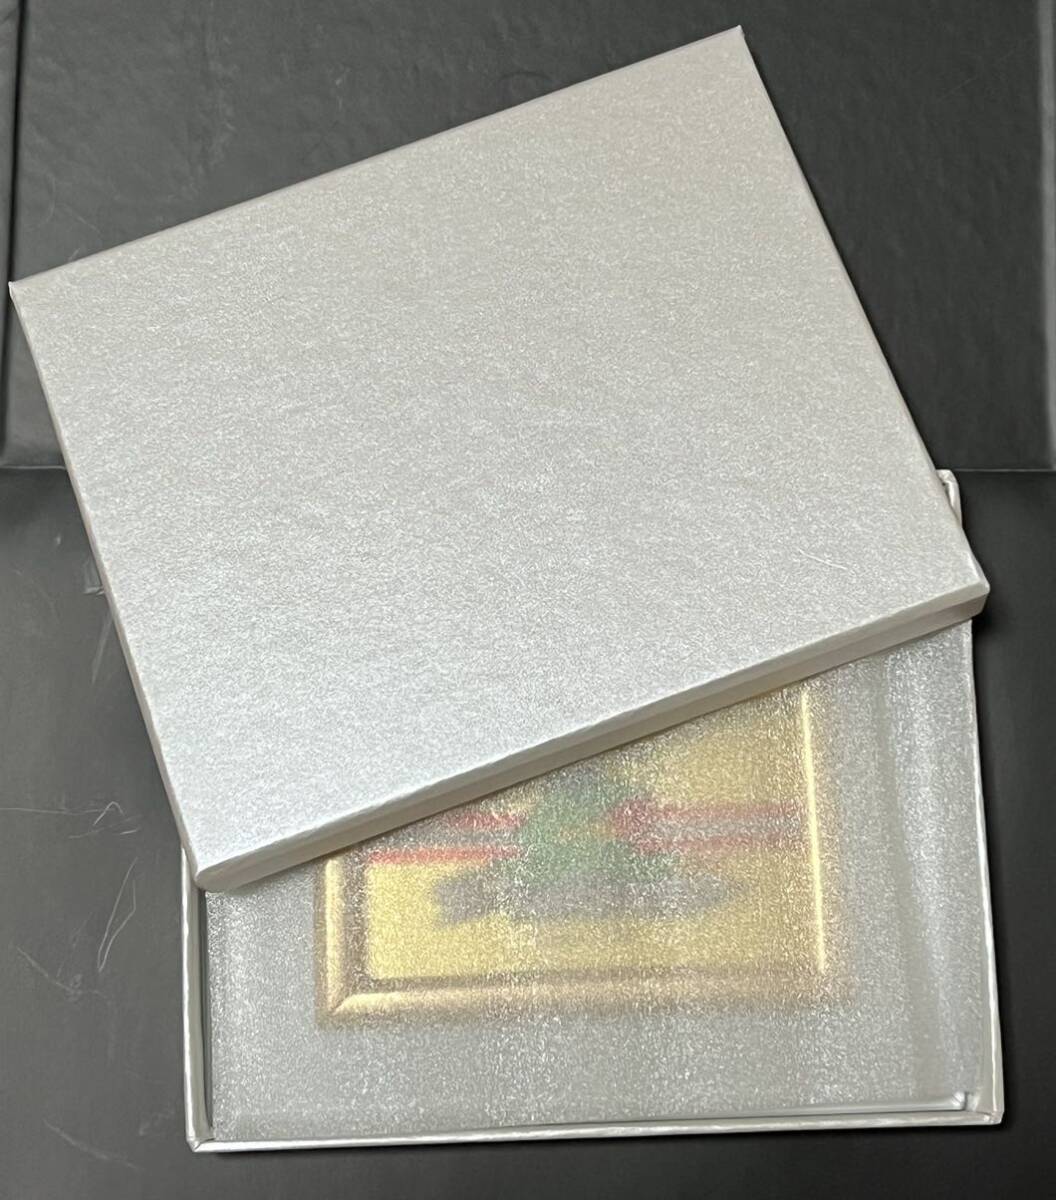 山佐 ニューパルサー純金製カード シリアルナンバー付き アクリルスタンド付き 美品の画像6